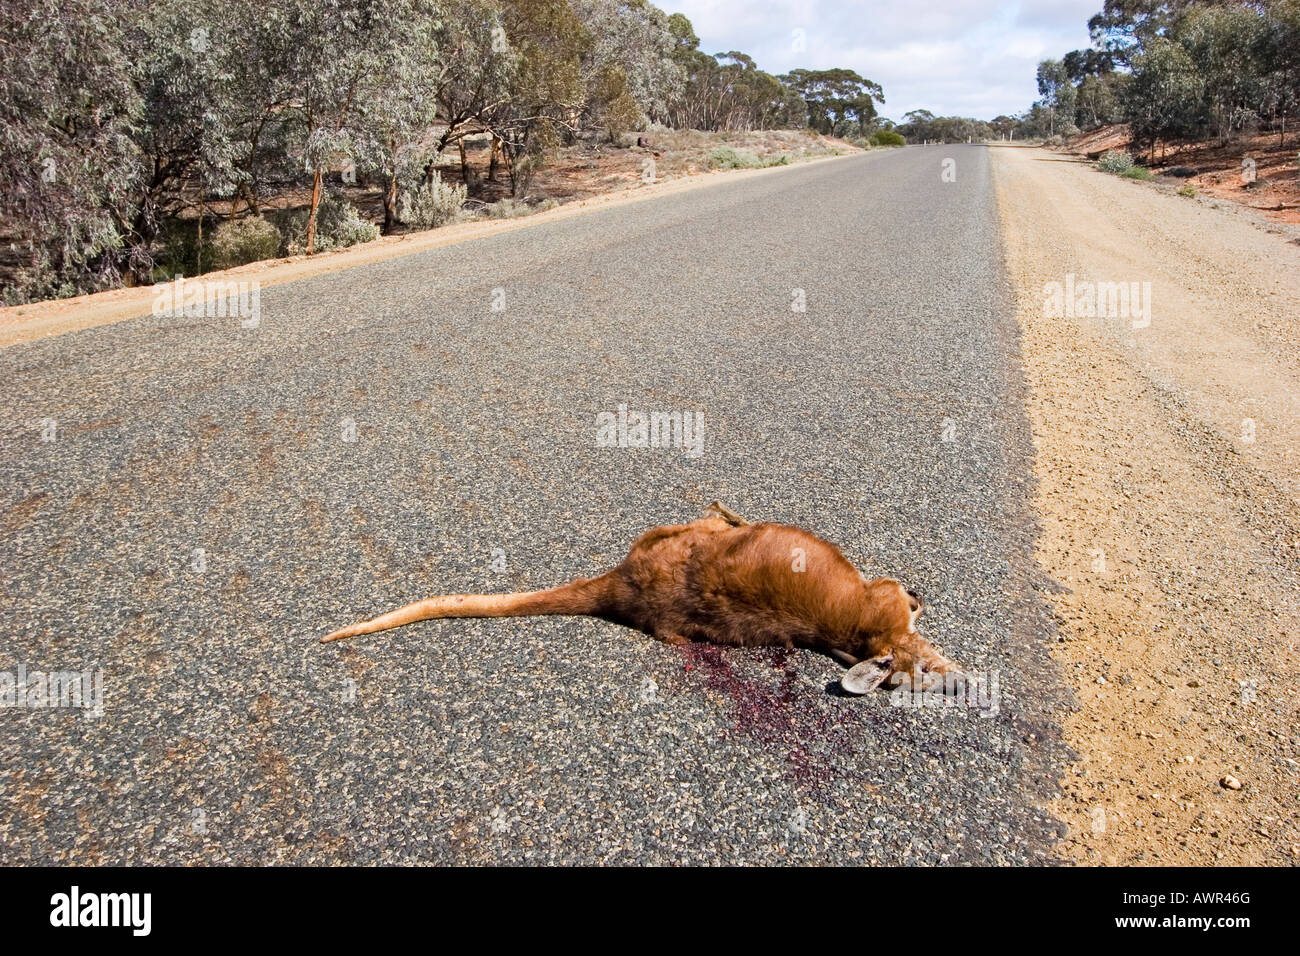 Dead kangaroo on the street, Western Australia, WA, Australia Stock Photo